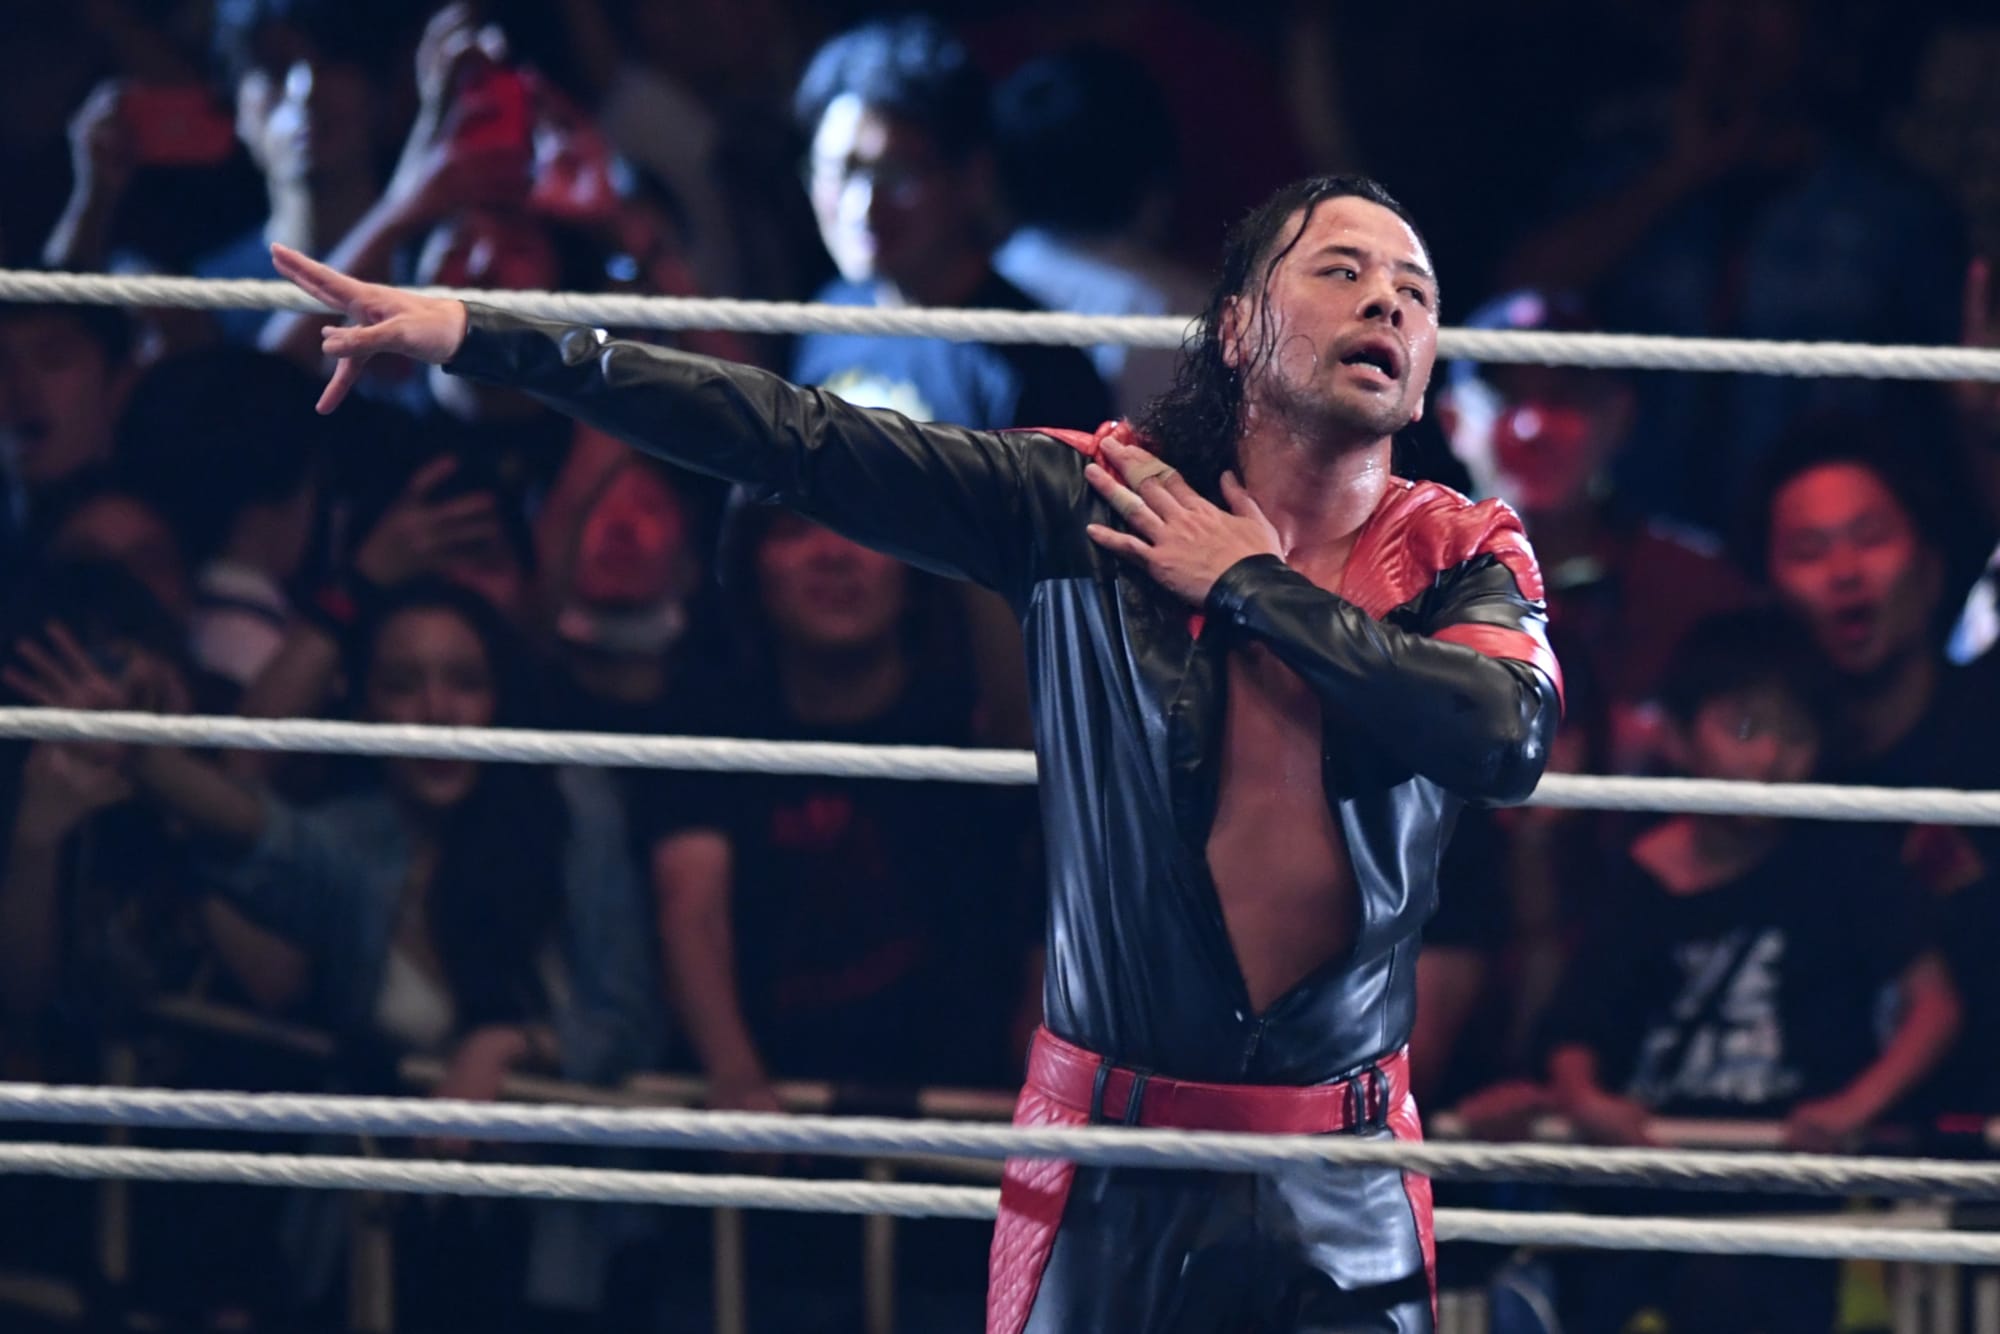 Why Shinsuke Nakamura Isn't Wrestling For WWE At The Moment